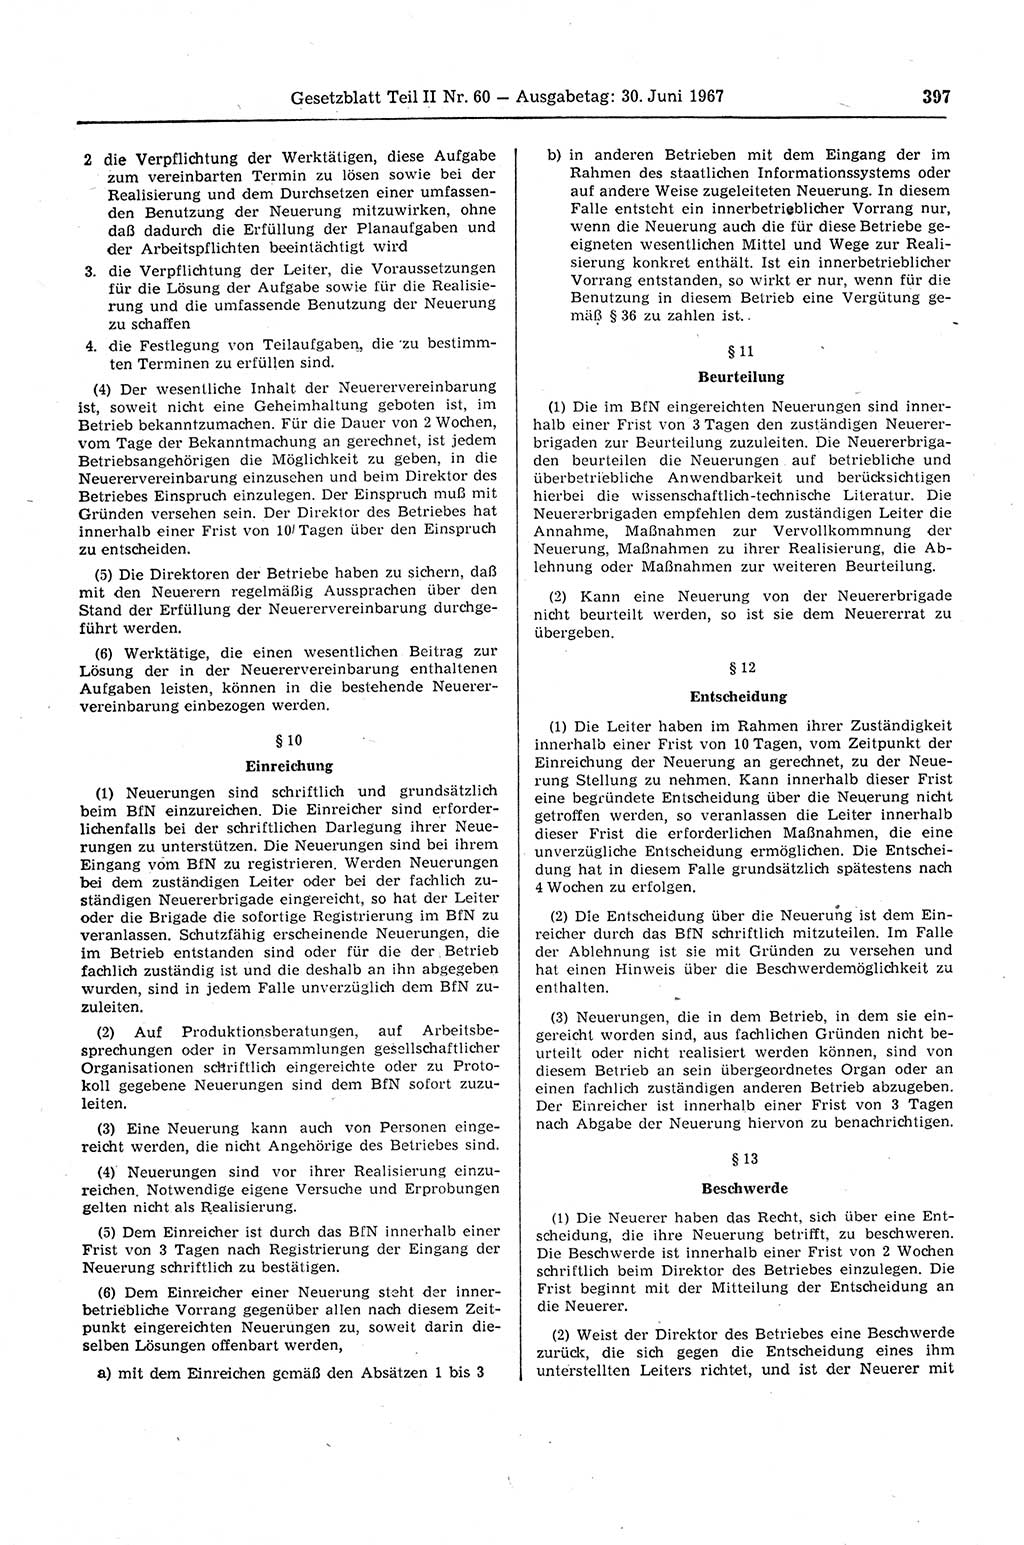 Gesetzblatt (GBl.) der Deutschen Demokratischen Republik (DDR) Teil ⅠⅠ 1967, Seite 397 (GBl. DDR ⅠⅠ 1967, S. 397)